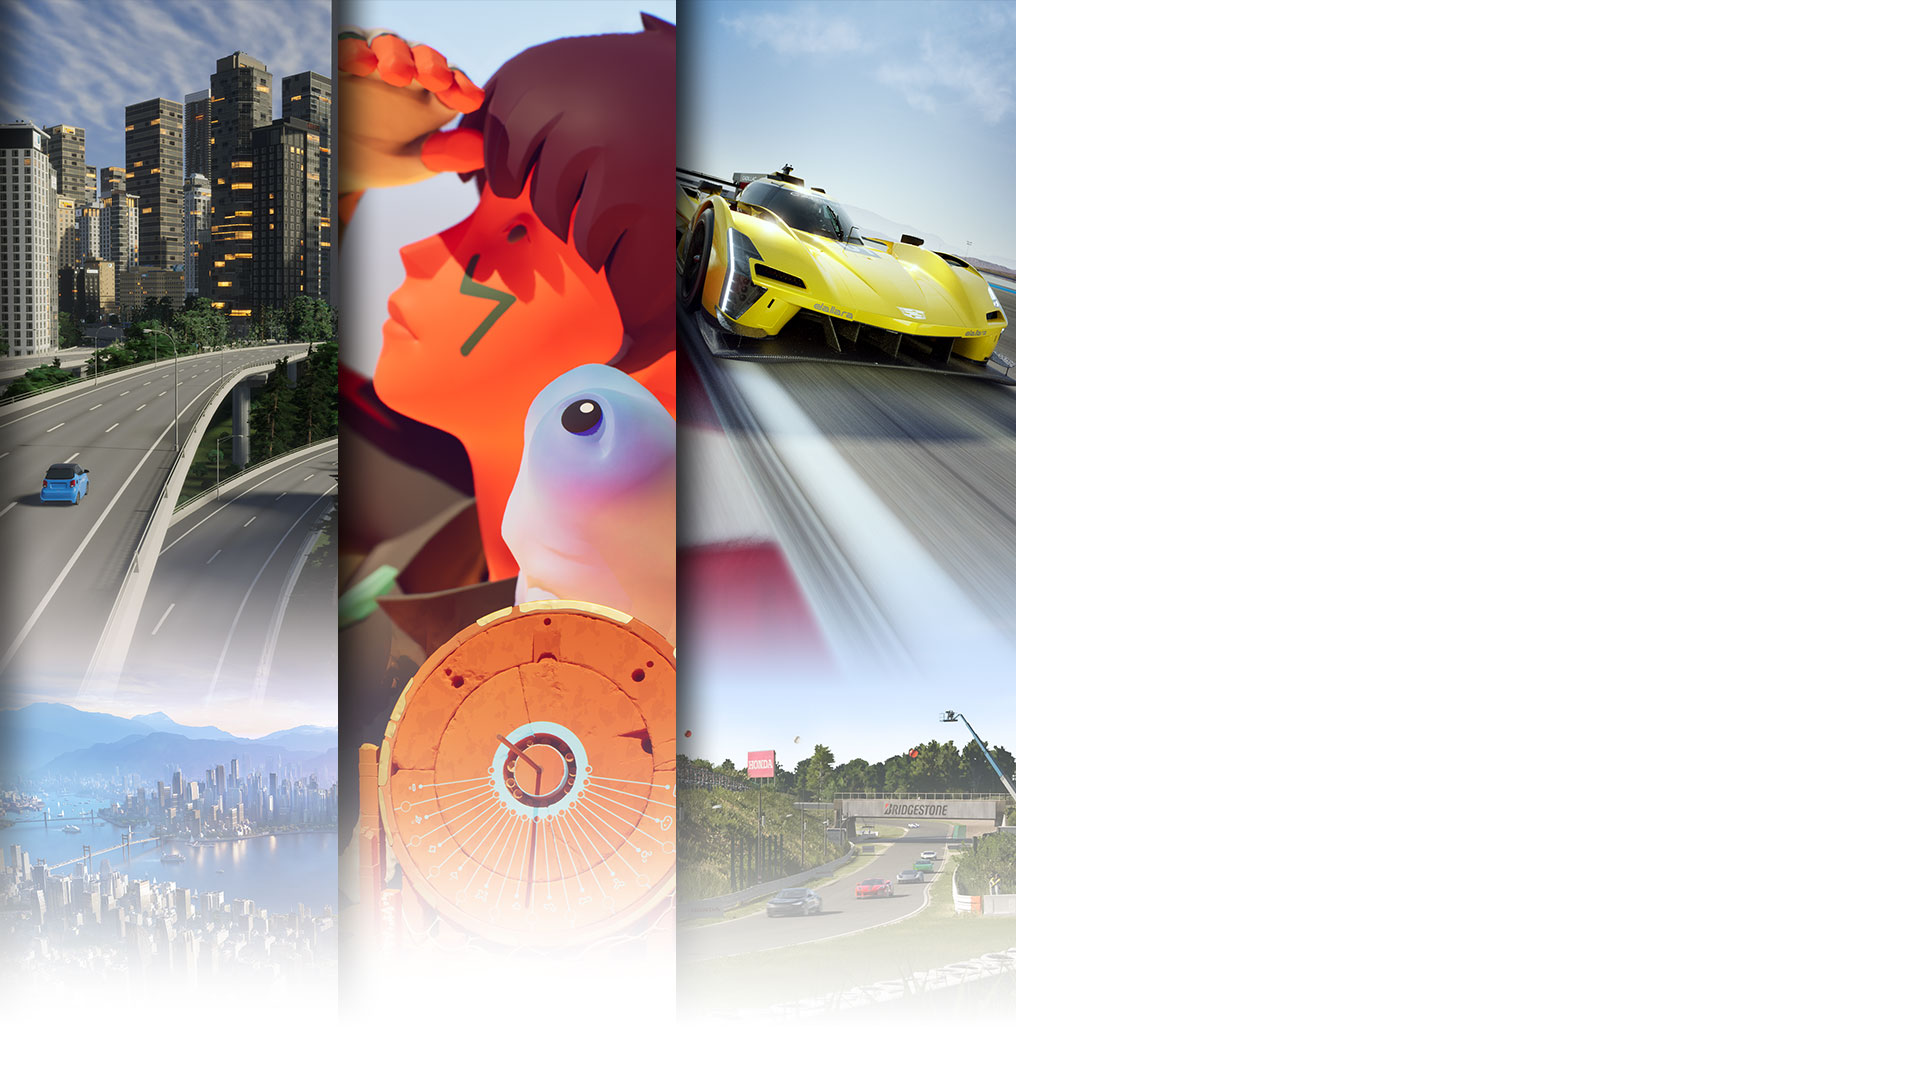 Arte promocional del juego de tres títulos disponibles el día de su lanzamiento en Game Pass: Cities Skylines 2, Jusant y Forza Motorsport.